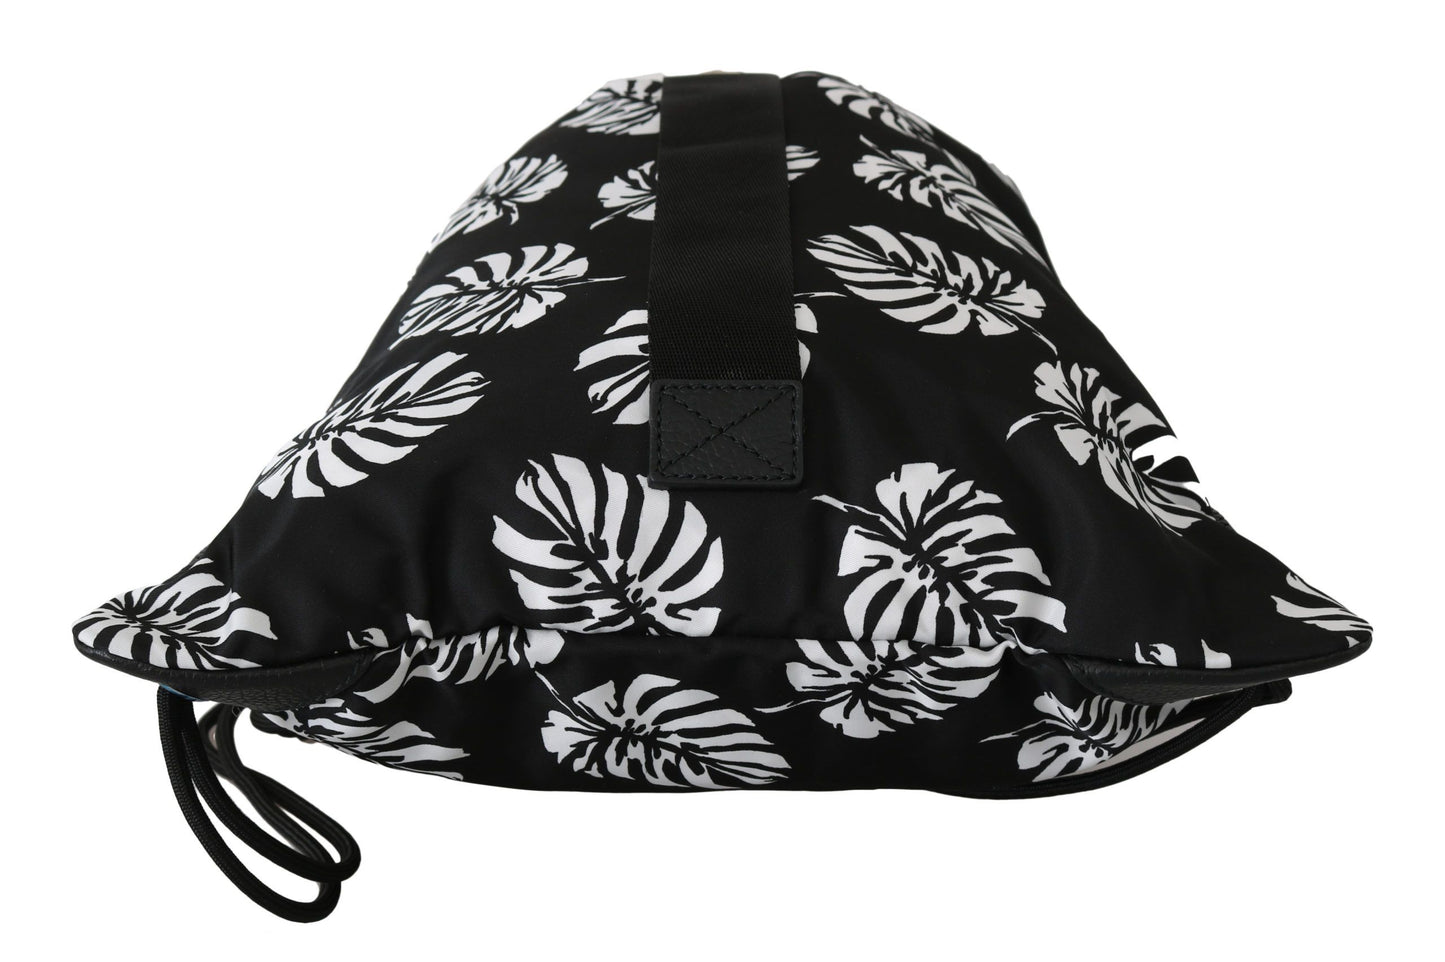 Black Palm Leaves Adjustable Drawstring Nap Sack Bag